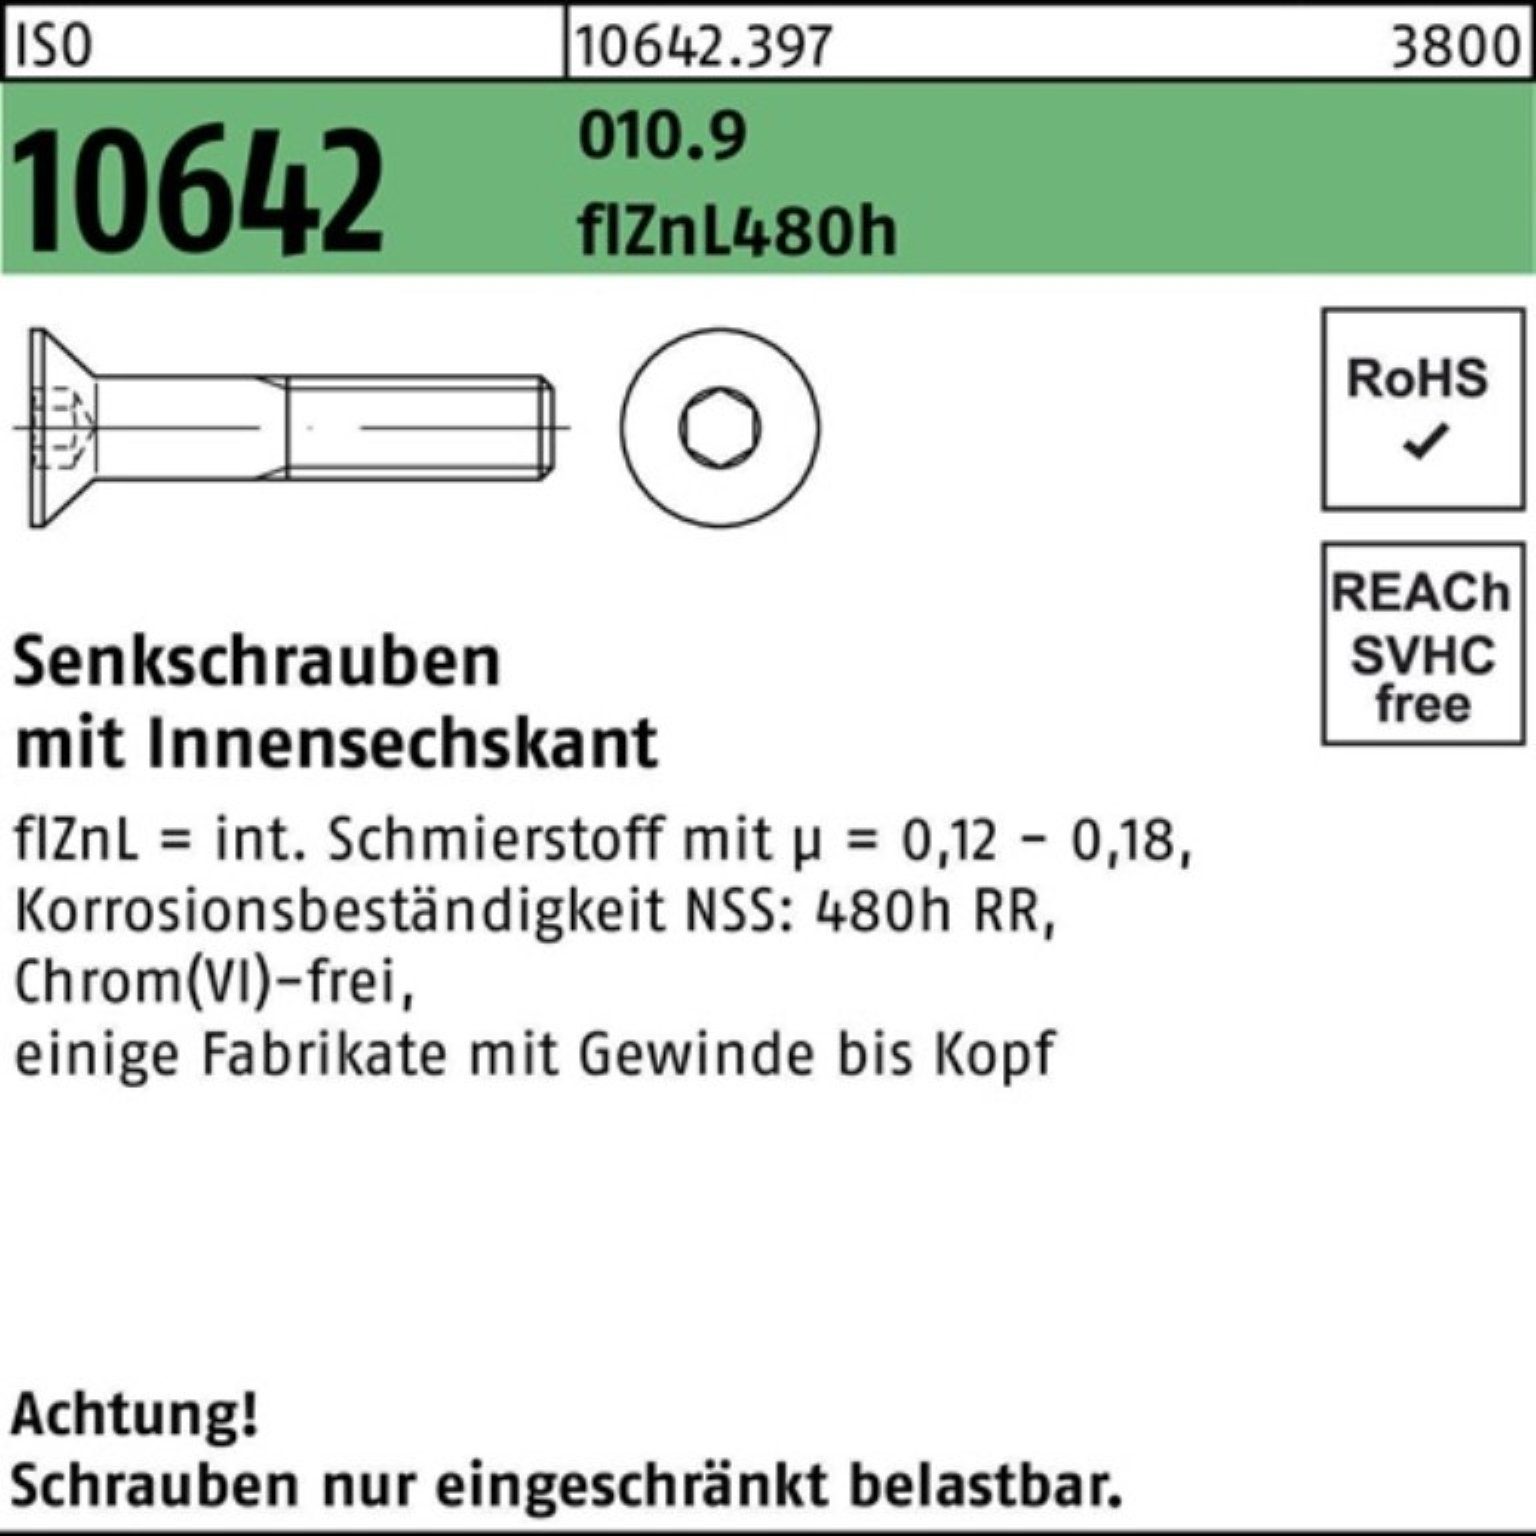 10642 Senkschraube flZnL 480h Pack ISO 200er 010.9 Senkschraube Innen-6kt zi M10x30 Reyher